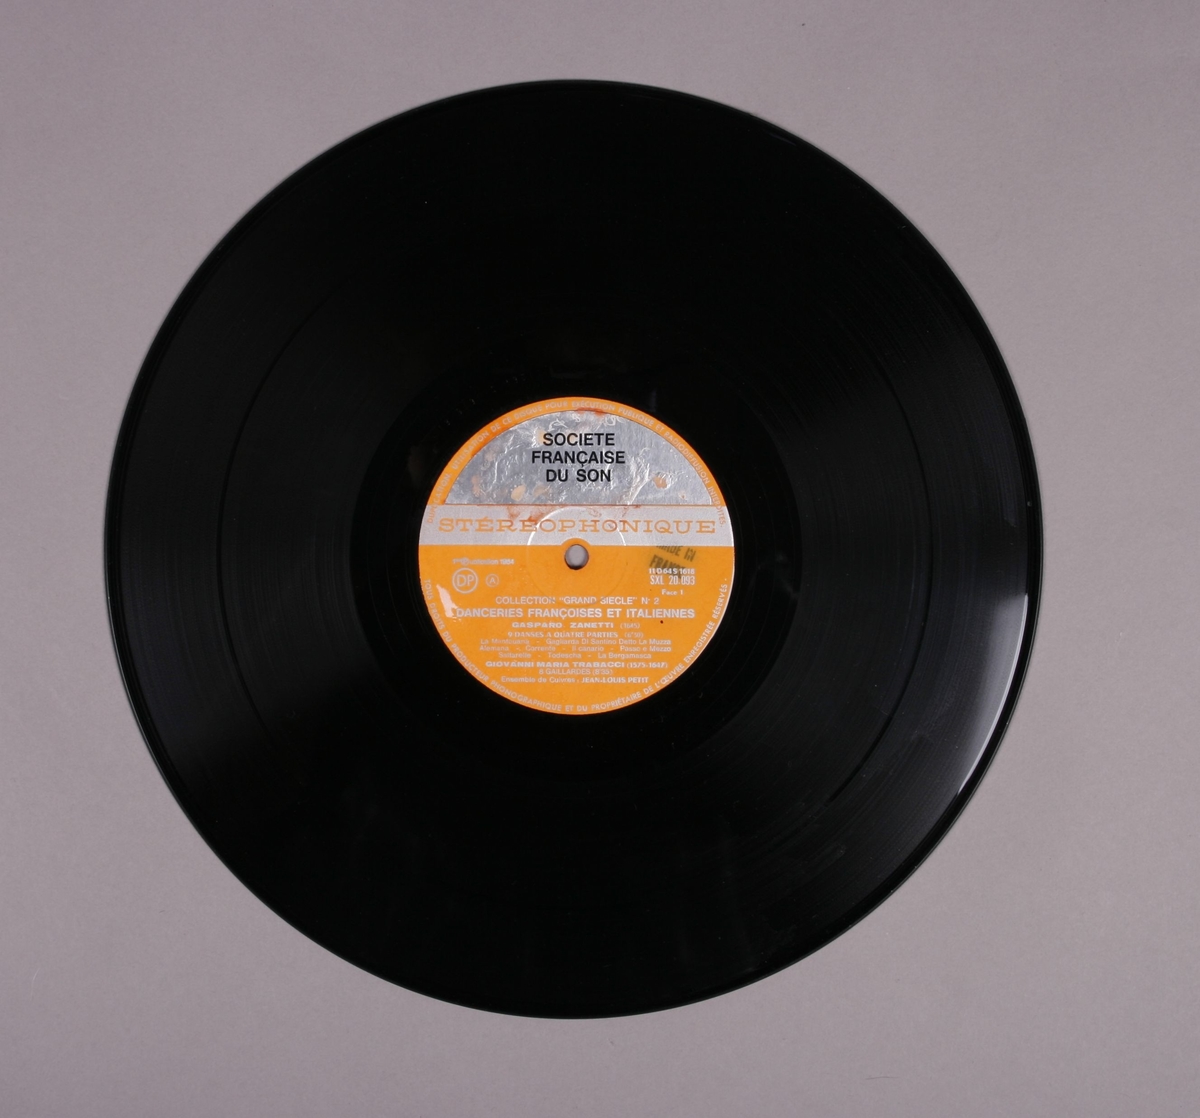 Grammofonplate i svart vinyl. Plata ligger i en uoriginal papirlomme med plastfôr, stemplet "Angel Records". Ligger ved et håndskrevet notatark (se bilde)